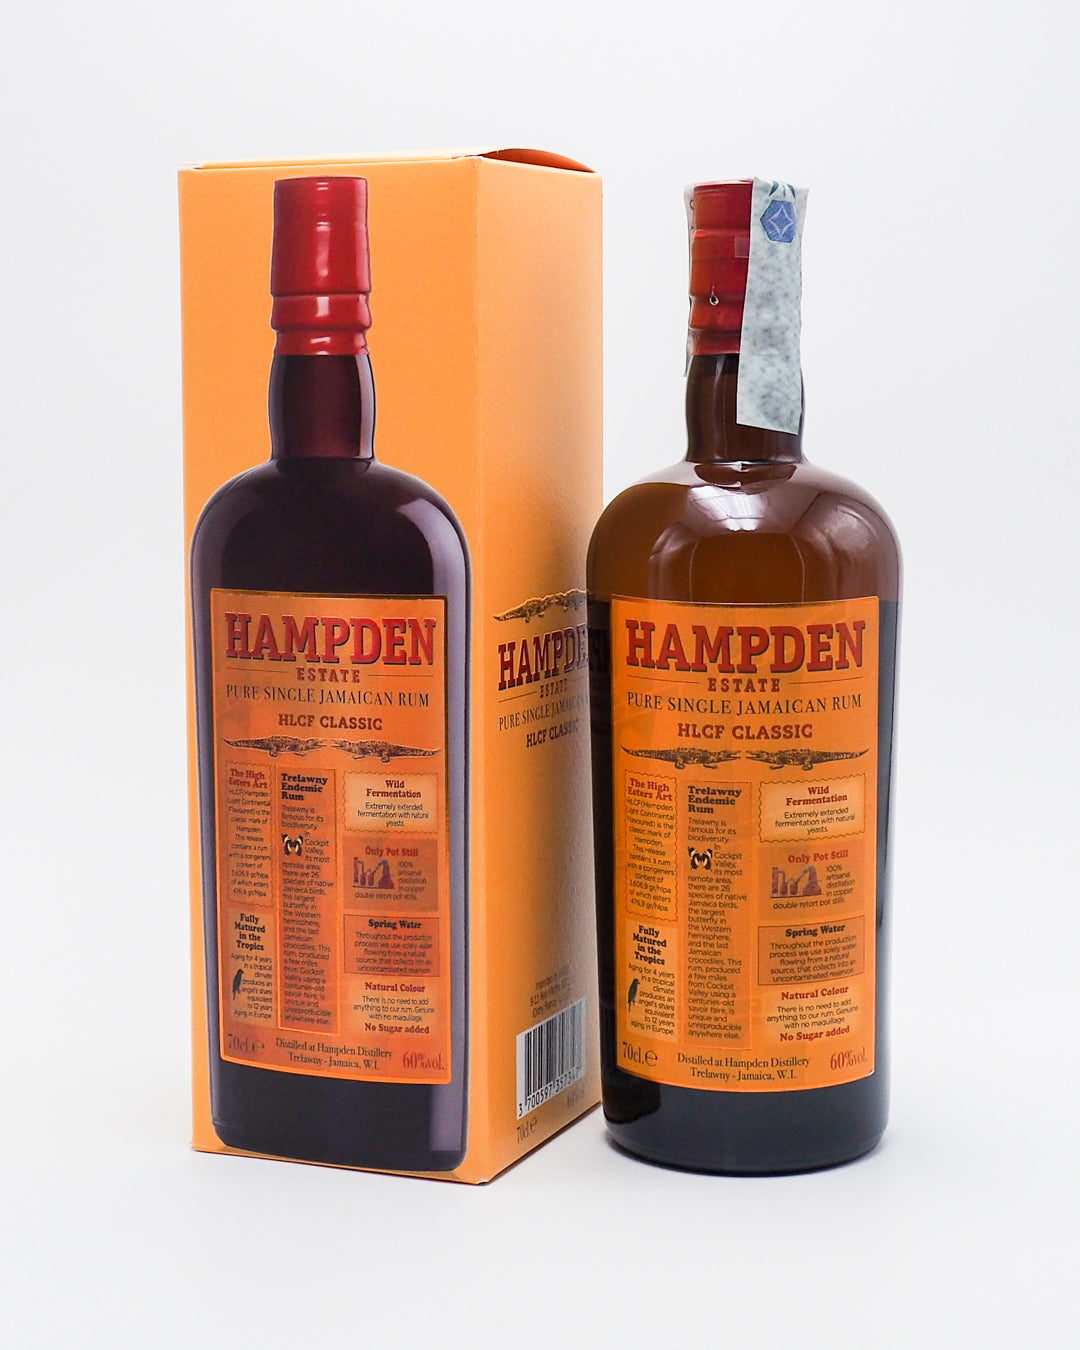 rum-hlcf-classic-hampden-estate